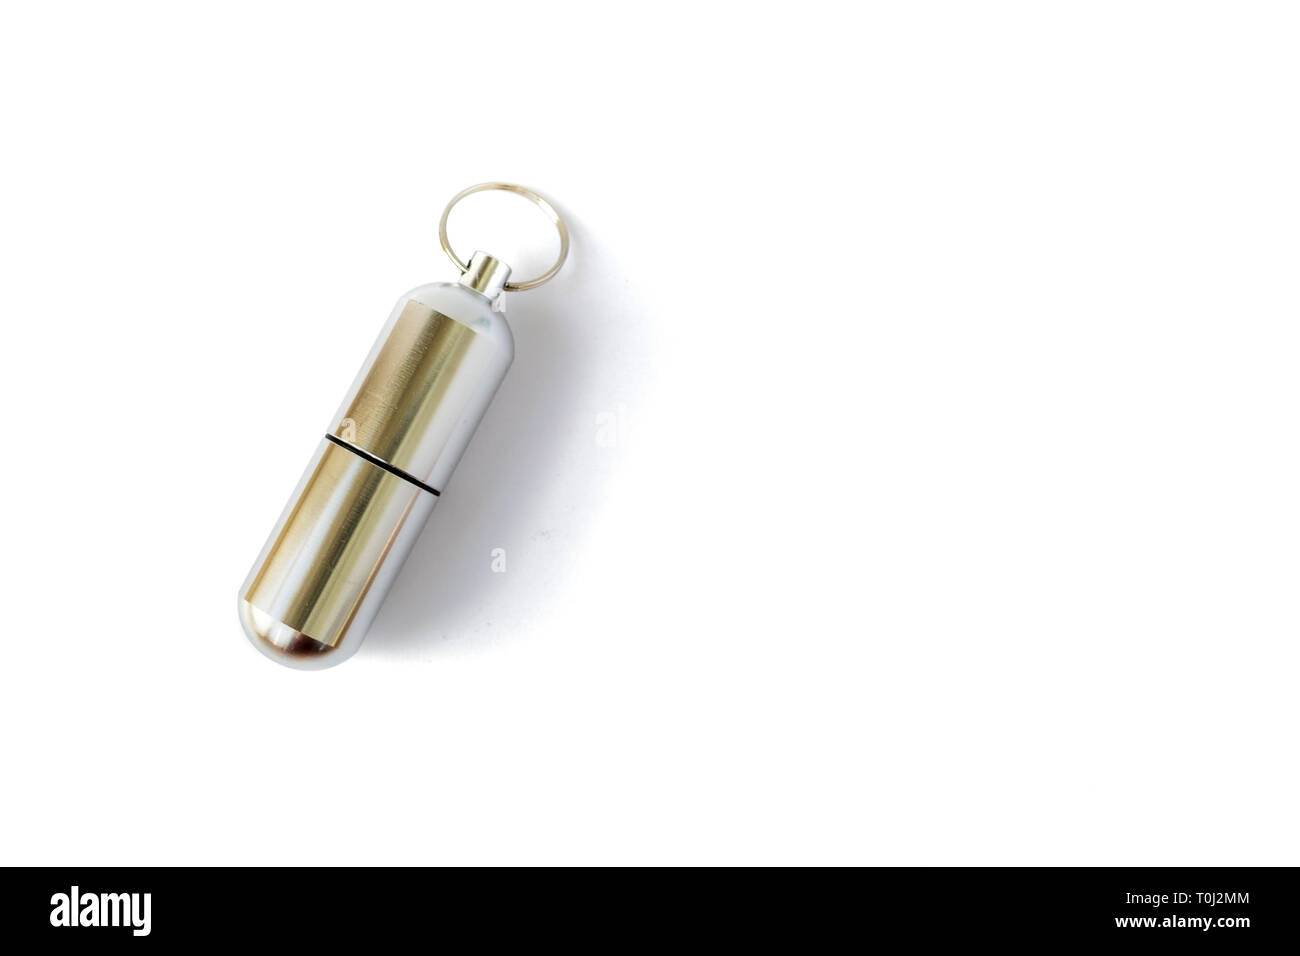 Chiuso pillola di alluminio bottiglia con una chiave ad anello, isolati su sfondo bianco. Chiave catena bottiglia per la memorizzazione di medicina e altri oggetti di piccole dimensioni durante le escursioni o Foto Stock